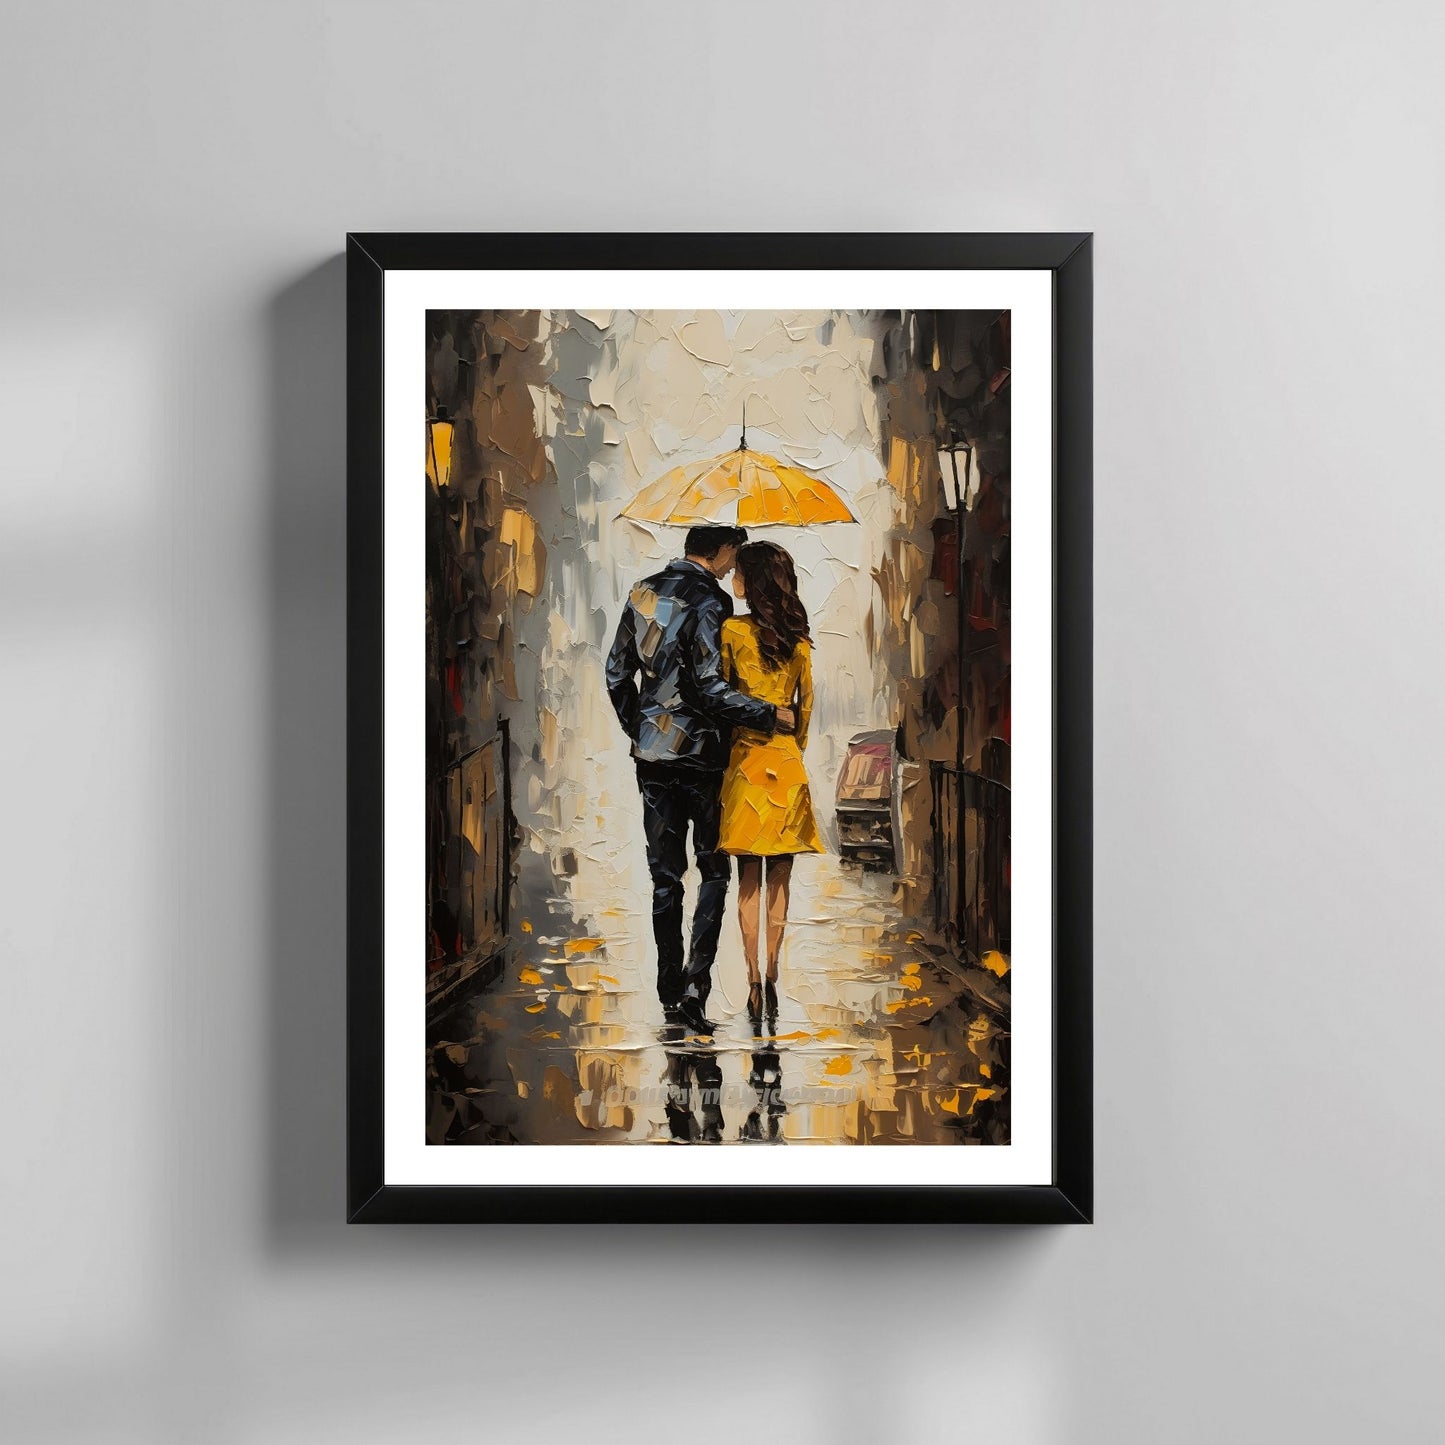 "Kjæresteparet under den gule paraplyen" - oljemaleri i grafisk trykk. Motiv av et par som går under en gul paraply langs en gate. Hun har en gul kåpe og han en sort dress. Miljøbildet viser motivet som plakat i en sort ramme.